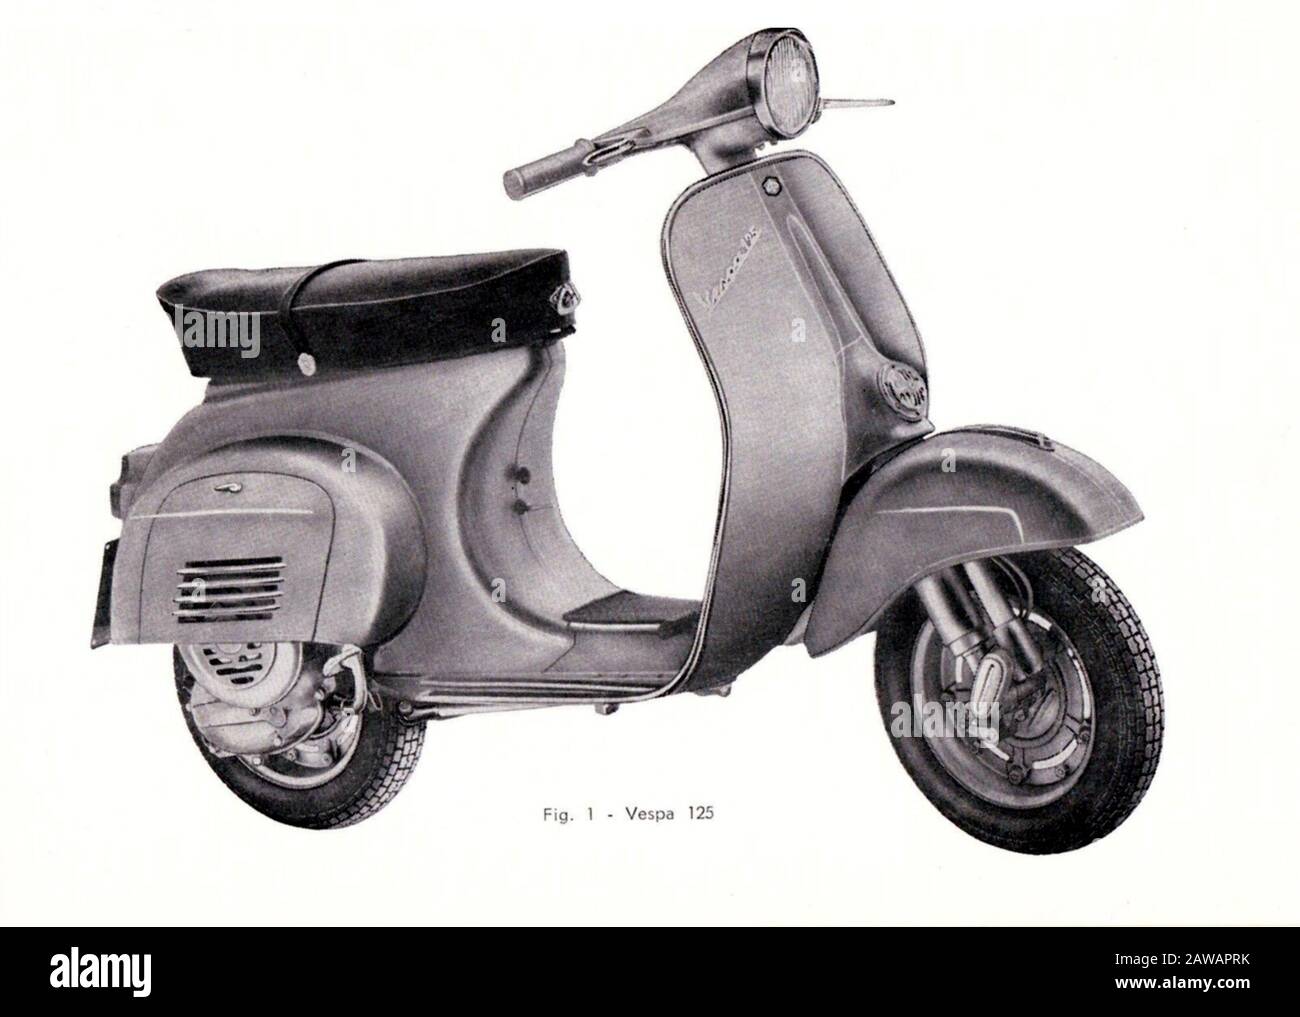 1965 , ITALIA : il celebre scooter italiano NUOVA VESPA 125 di PIAGGIO ,  foto del Libretto D'Uso e manutenzione Foto stock - Alamy